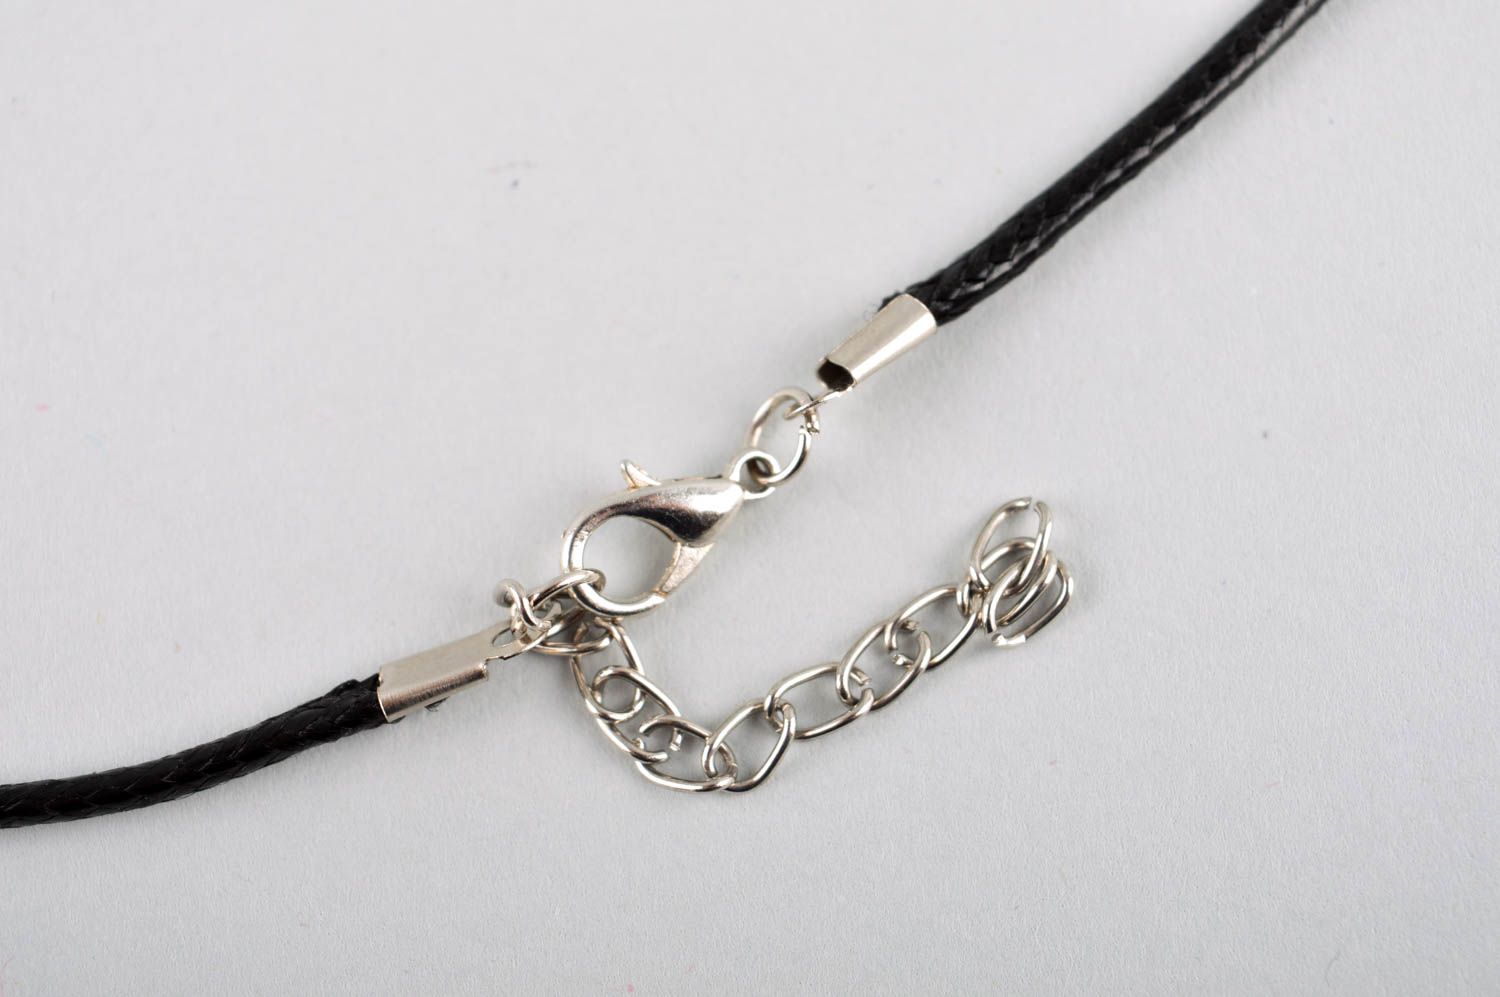 Handmade pendant on cord designer accessories for women glass pendant for girls photo 5